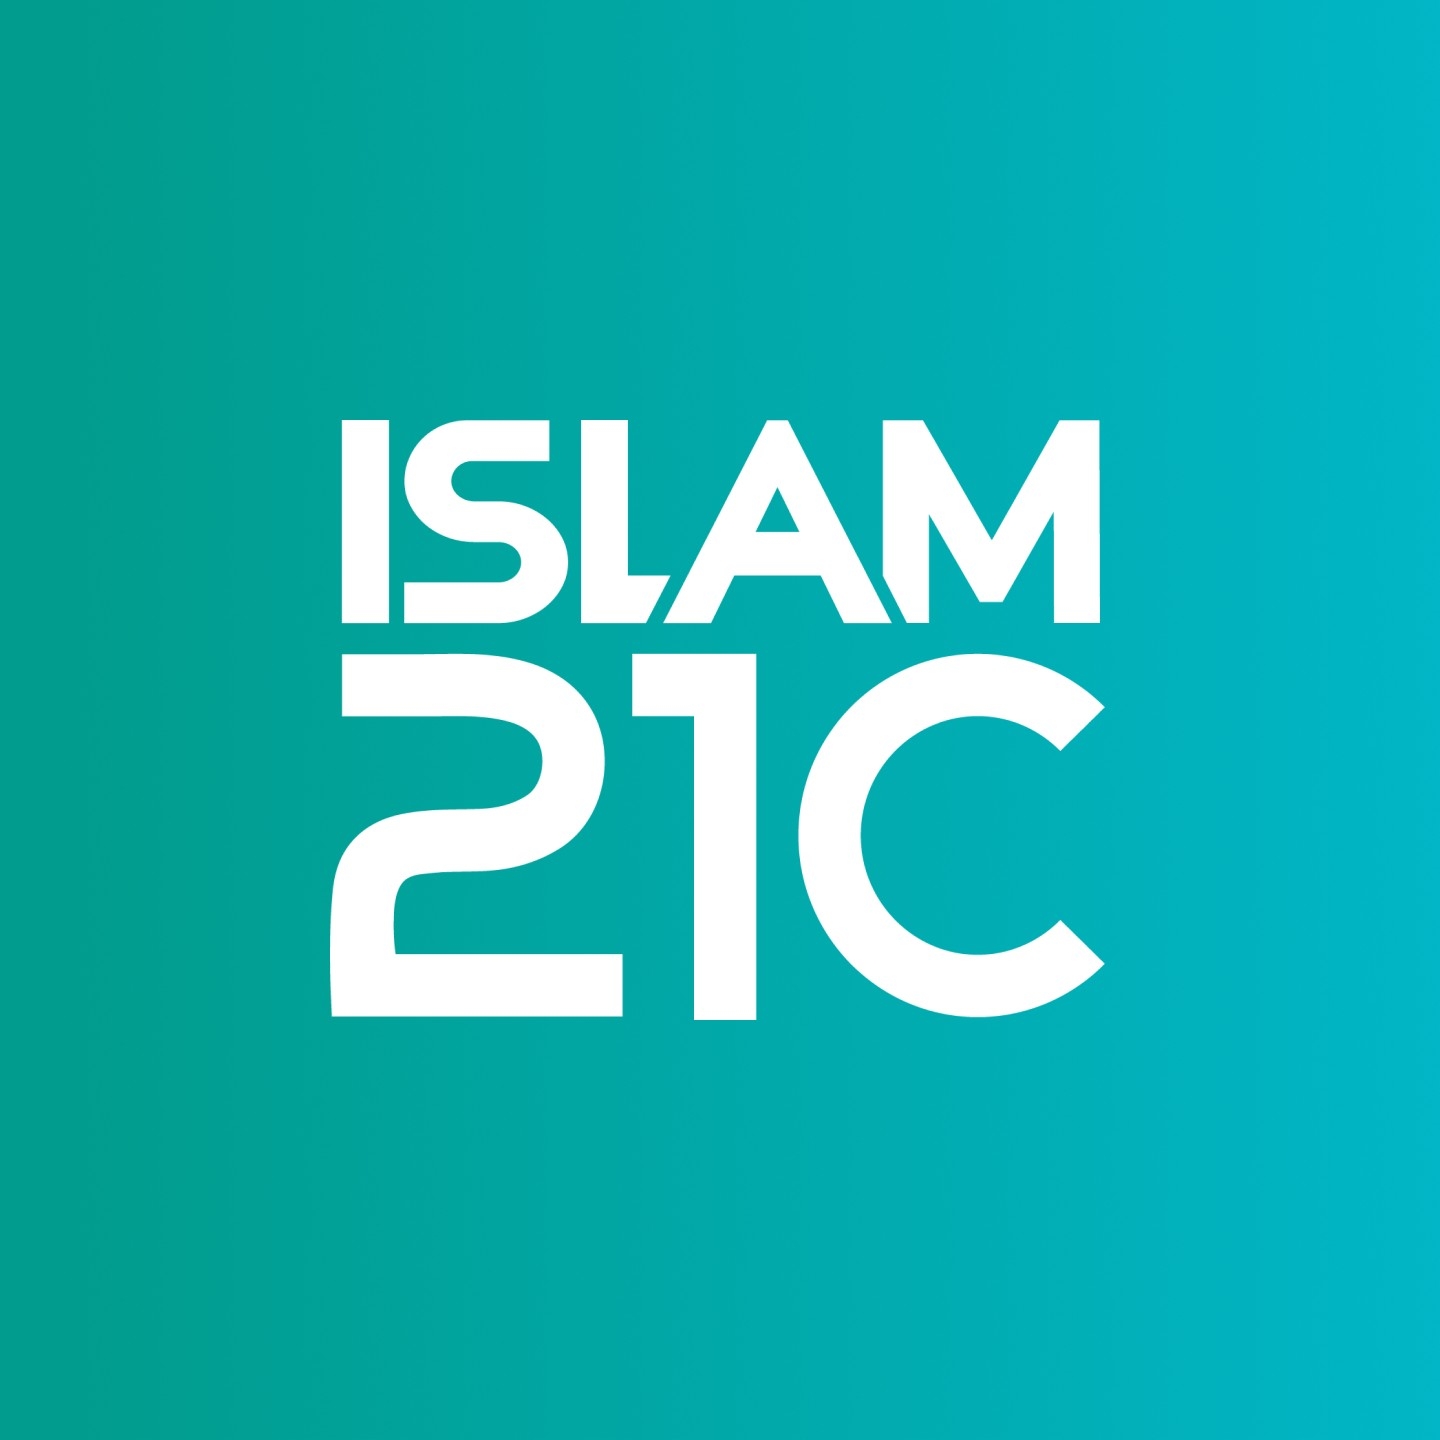 Islam21c Media